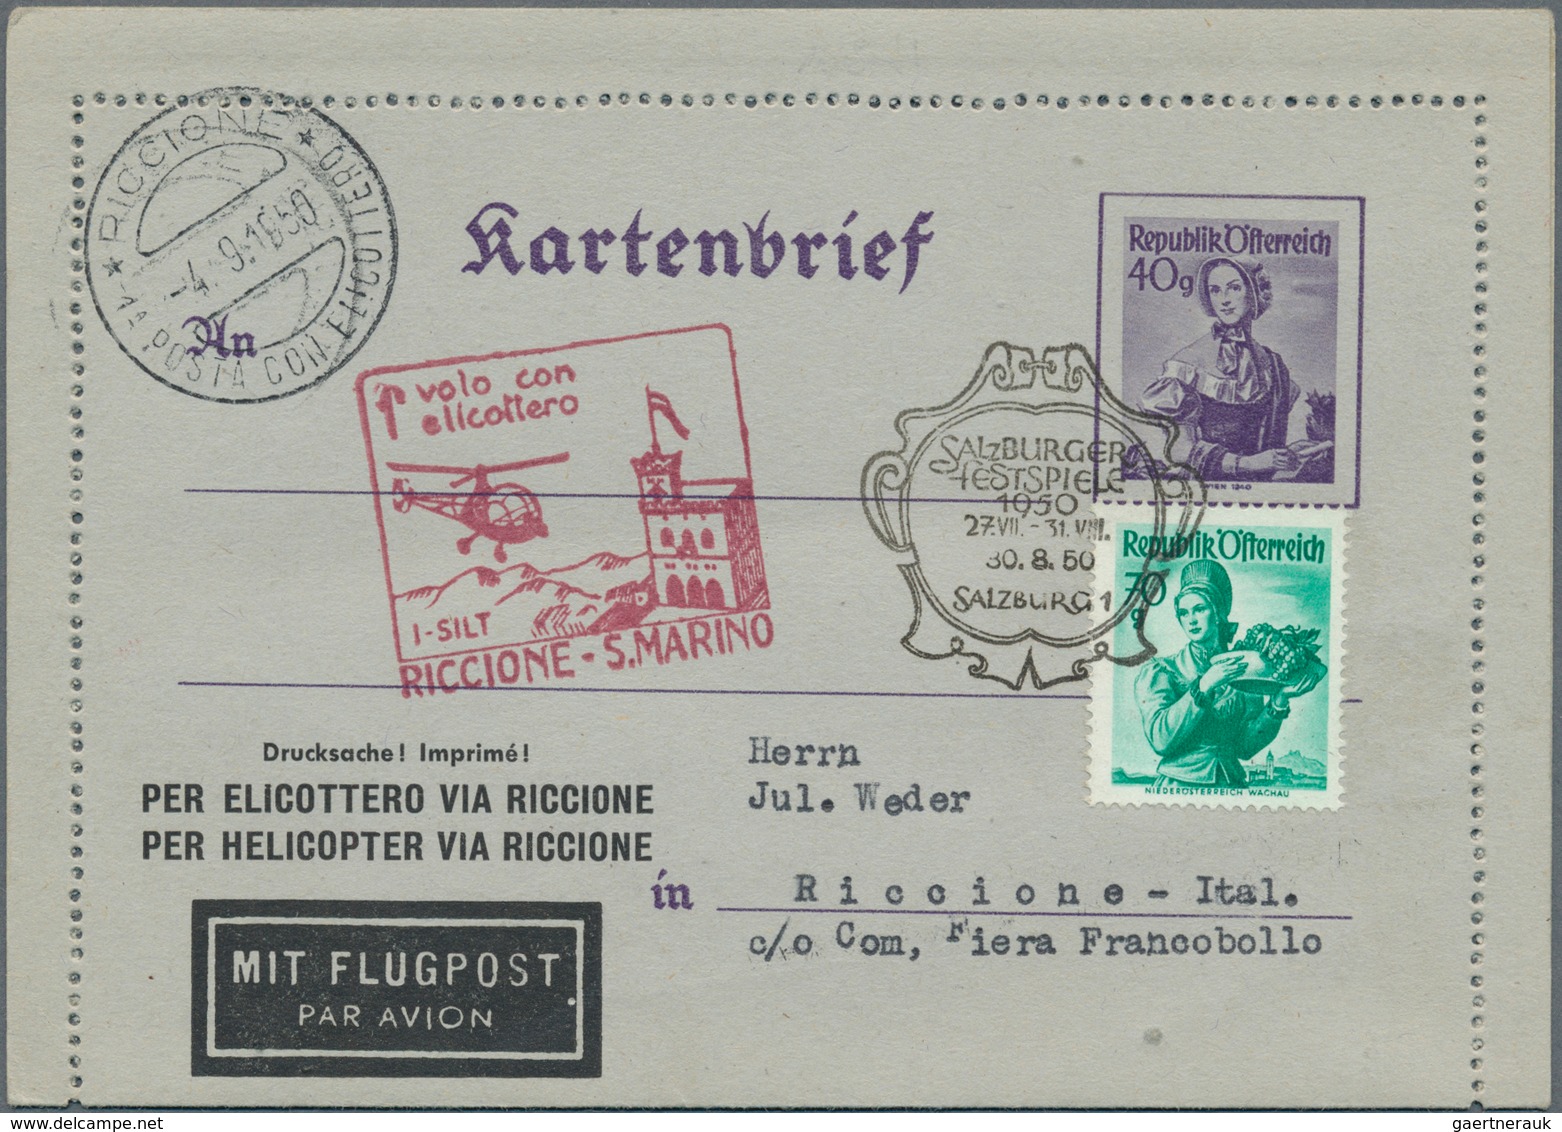 Österreich - Ganzsachen: 1886/1949, Slg. mit ca.150 Ganzsachen-Kartenbriefen ab der Kreuzerzeit bis